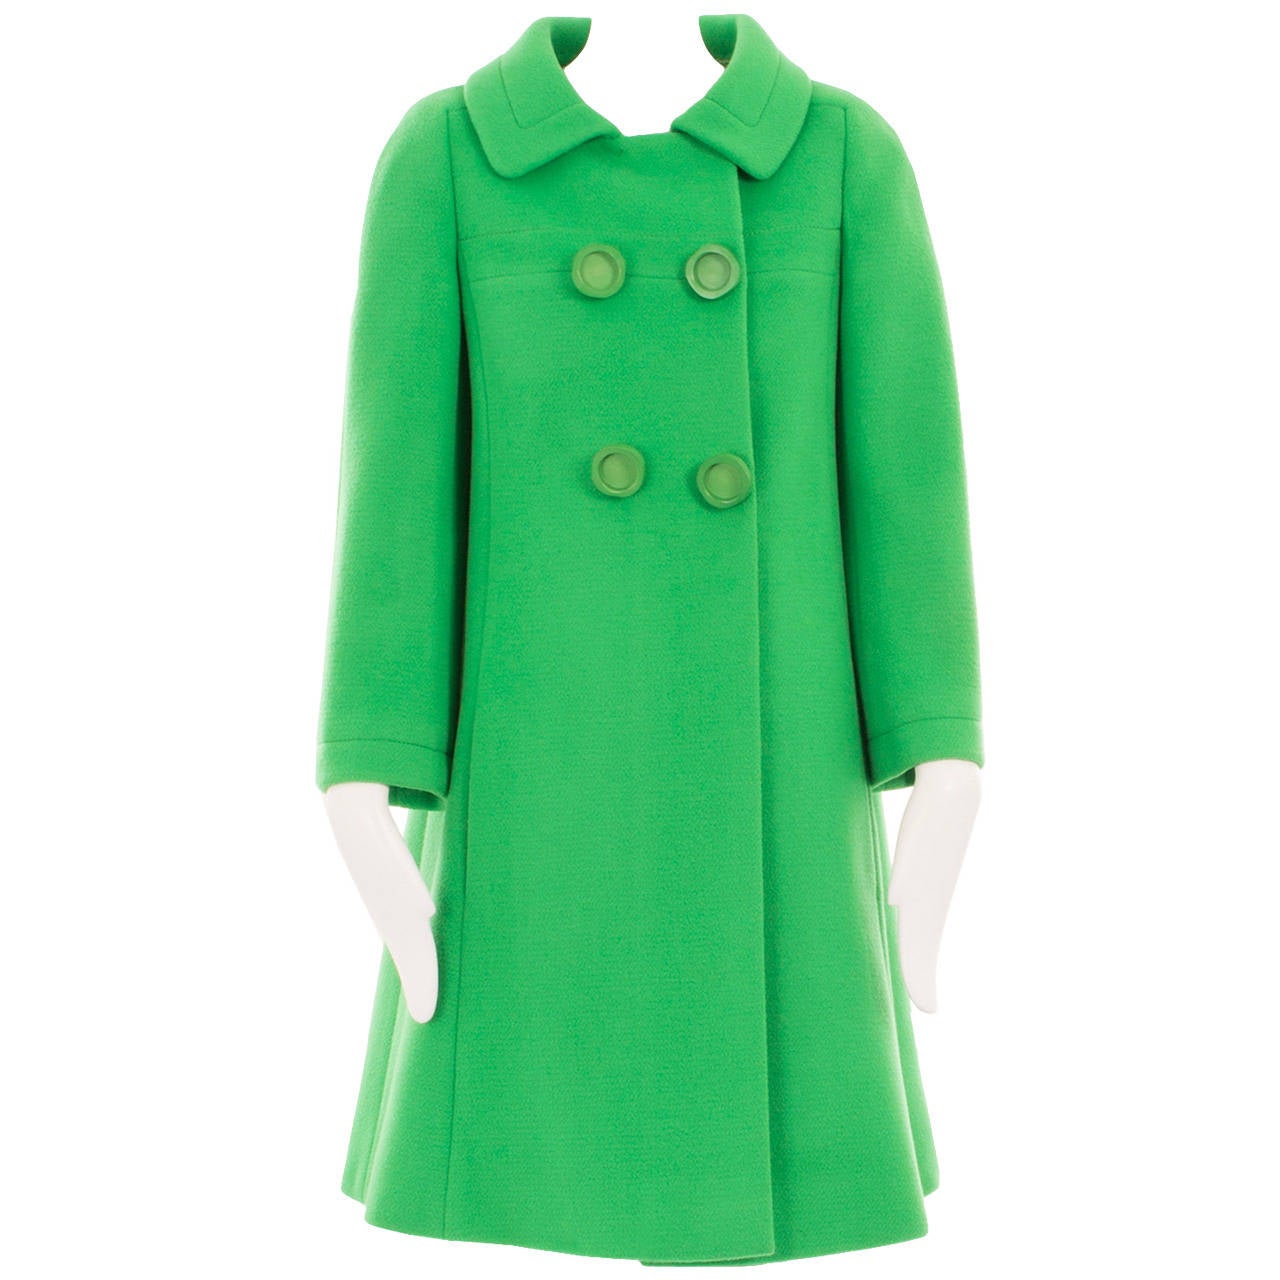 A Guy Laroche couture coat, circa 1965 For Sale